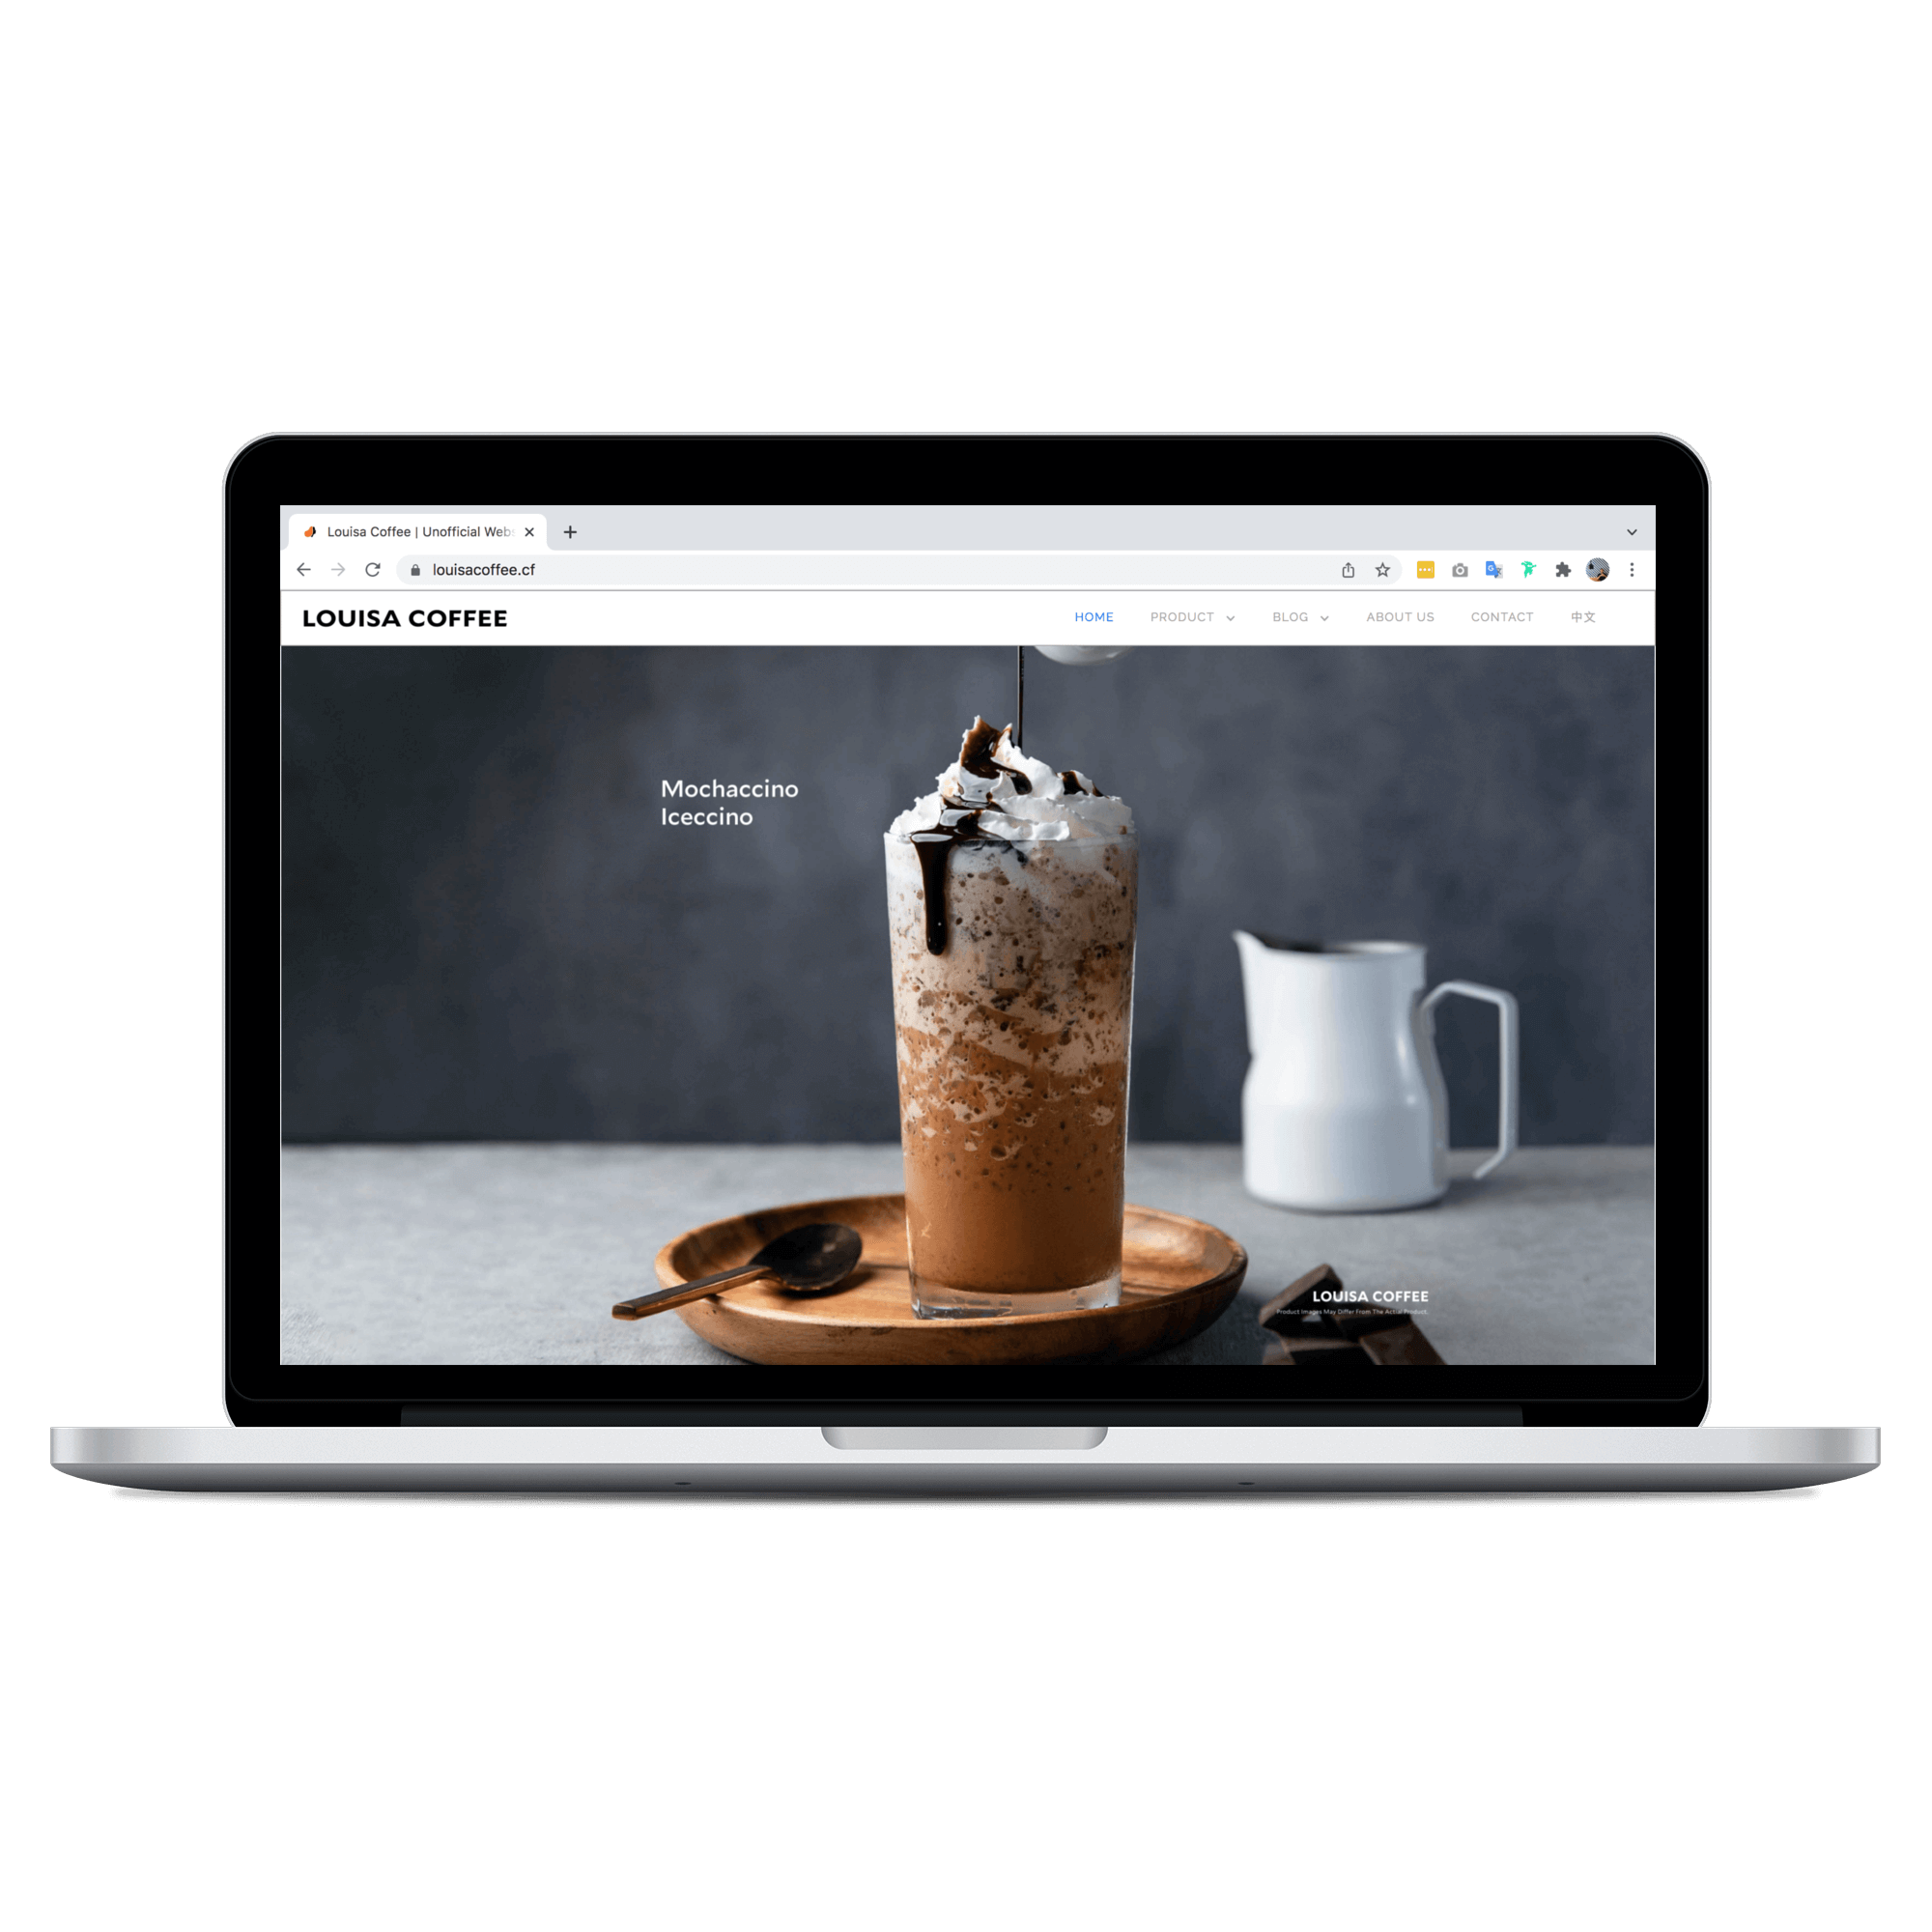 louisa coffee homepage on desktop